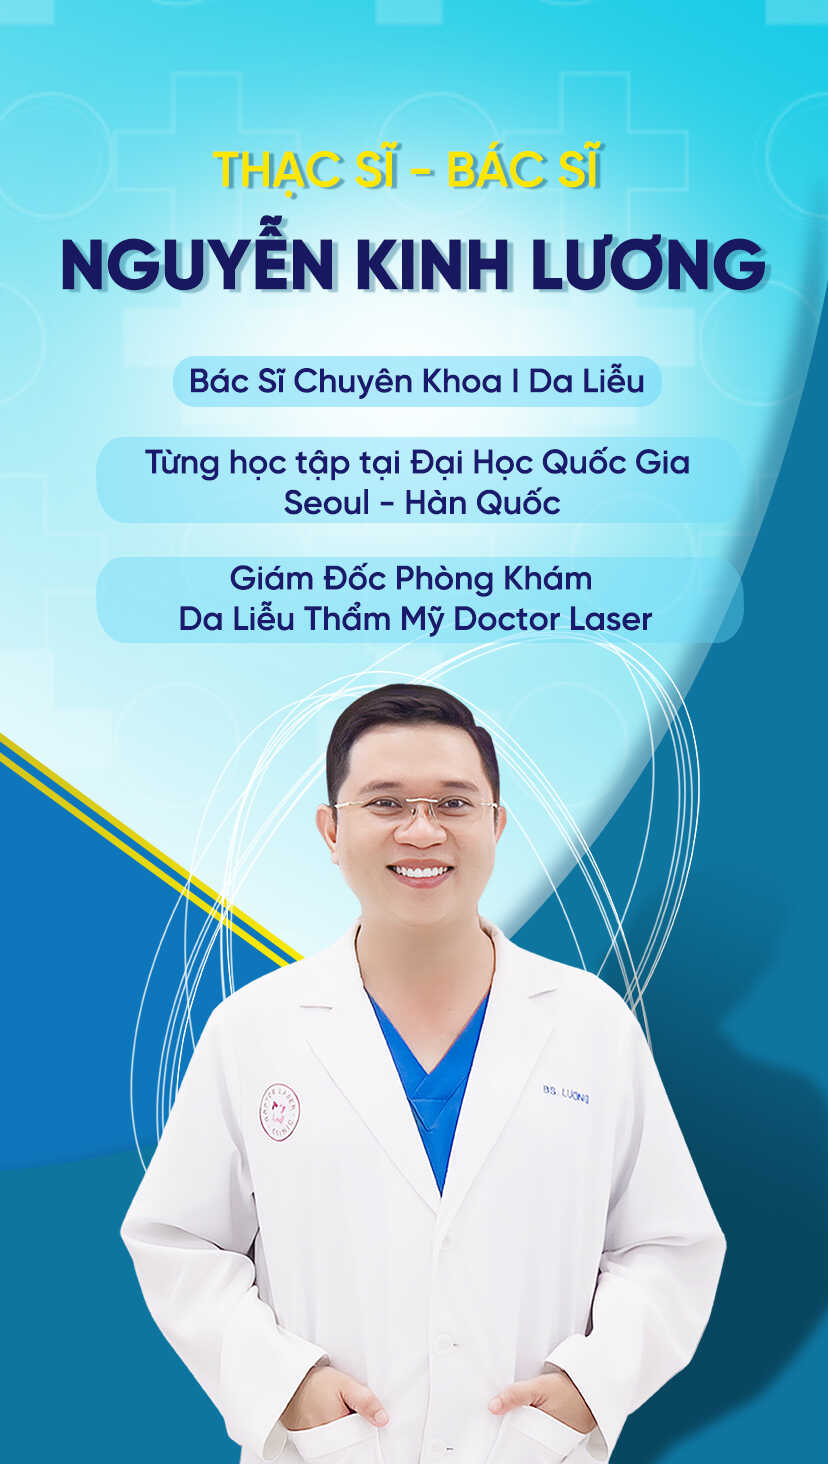 Bác sĩ Nguyễn Kinh Lương tại Doctor Laser